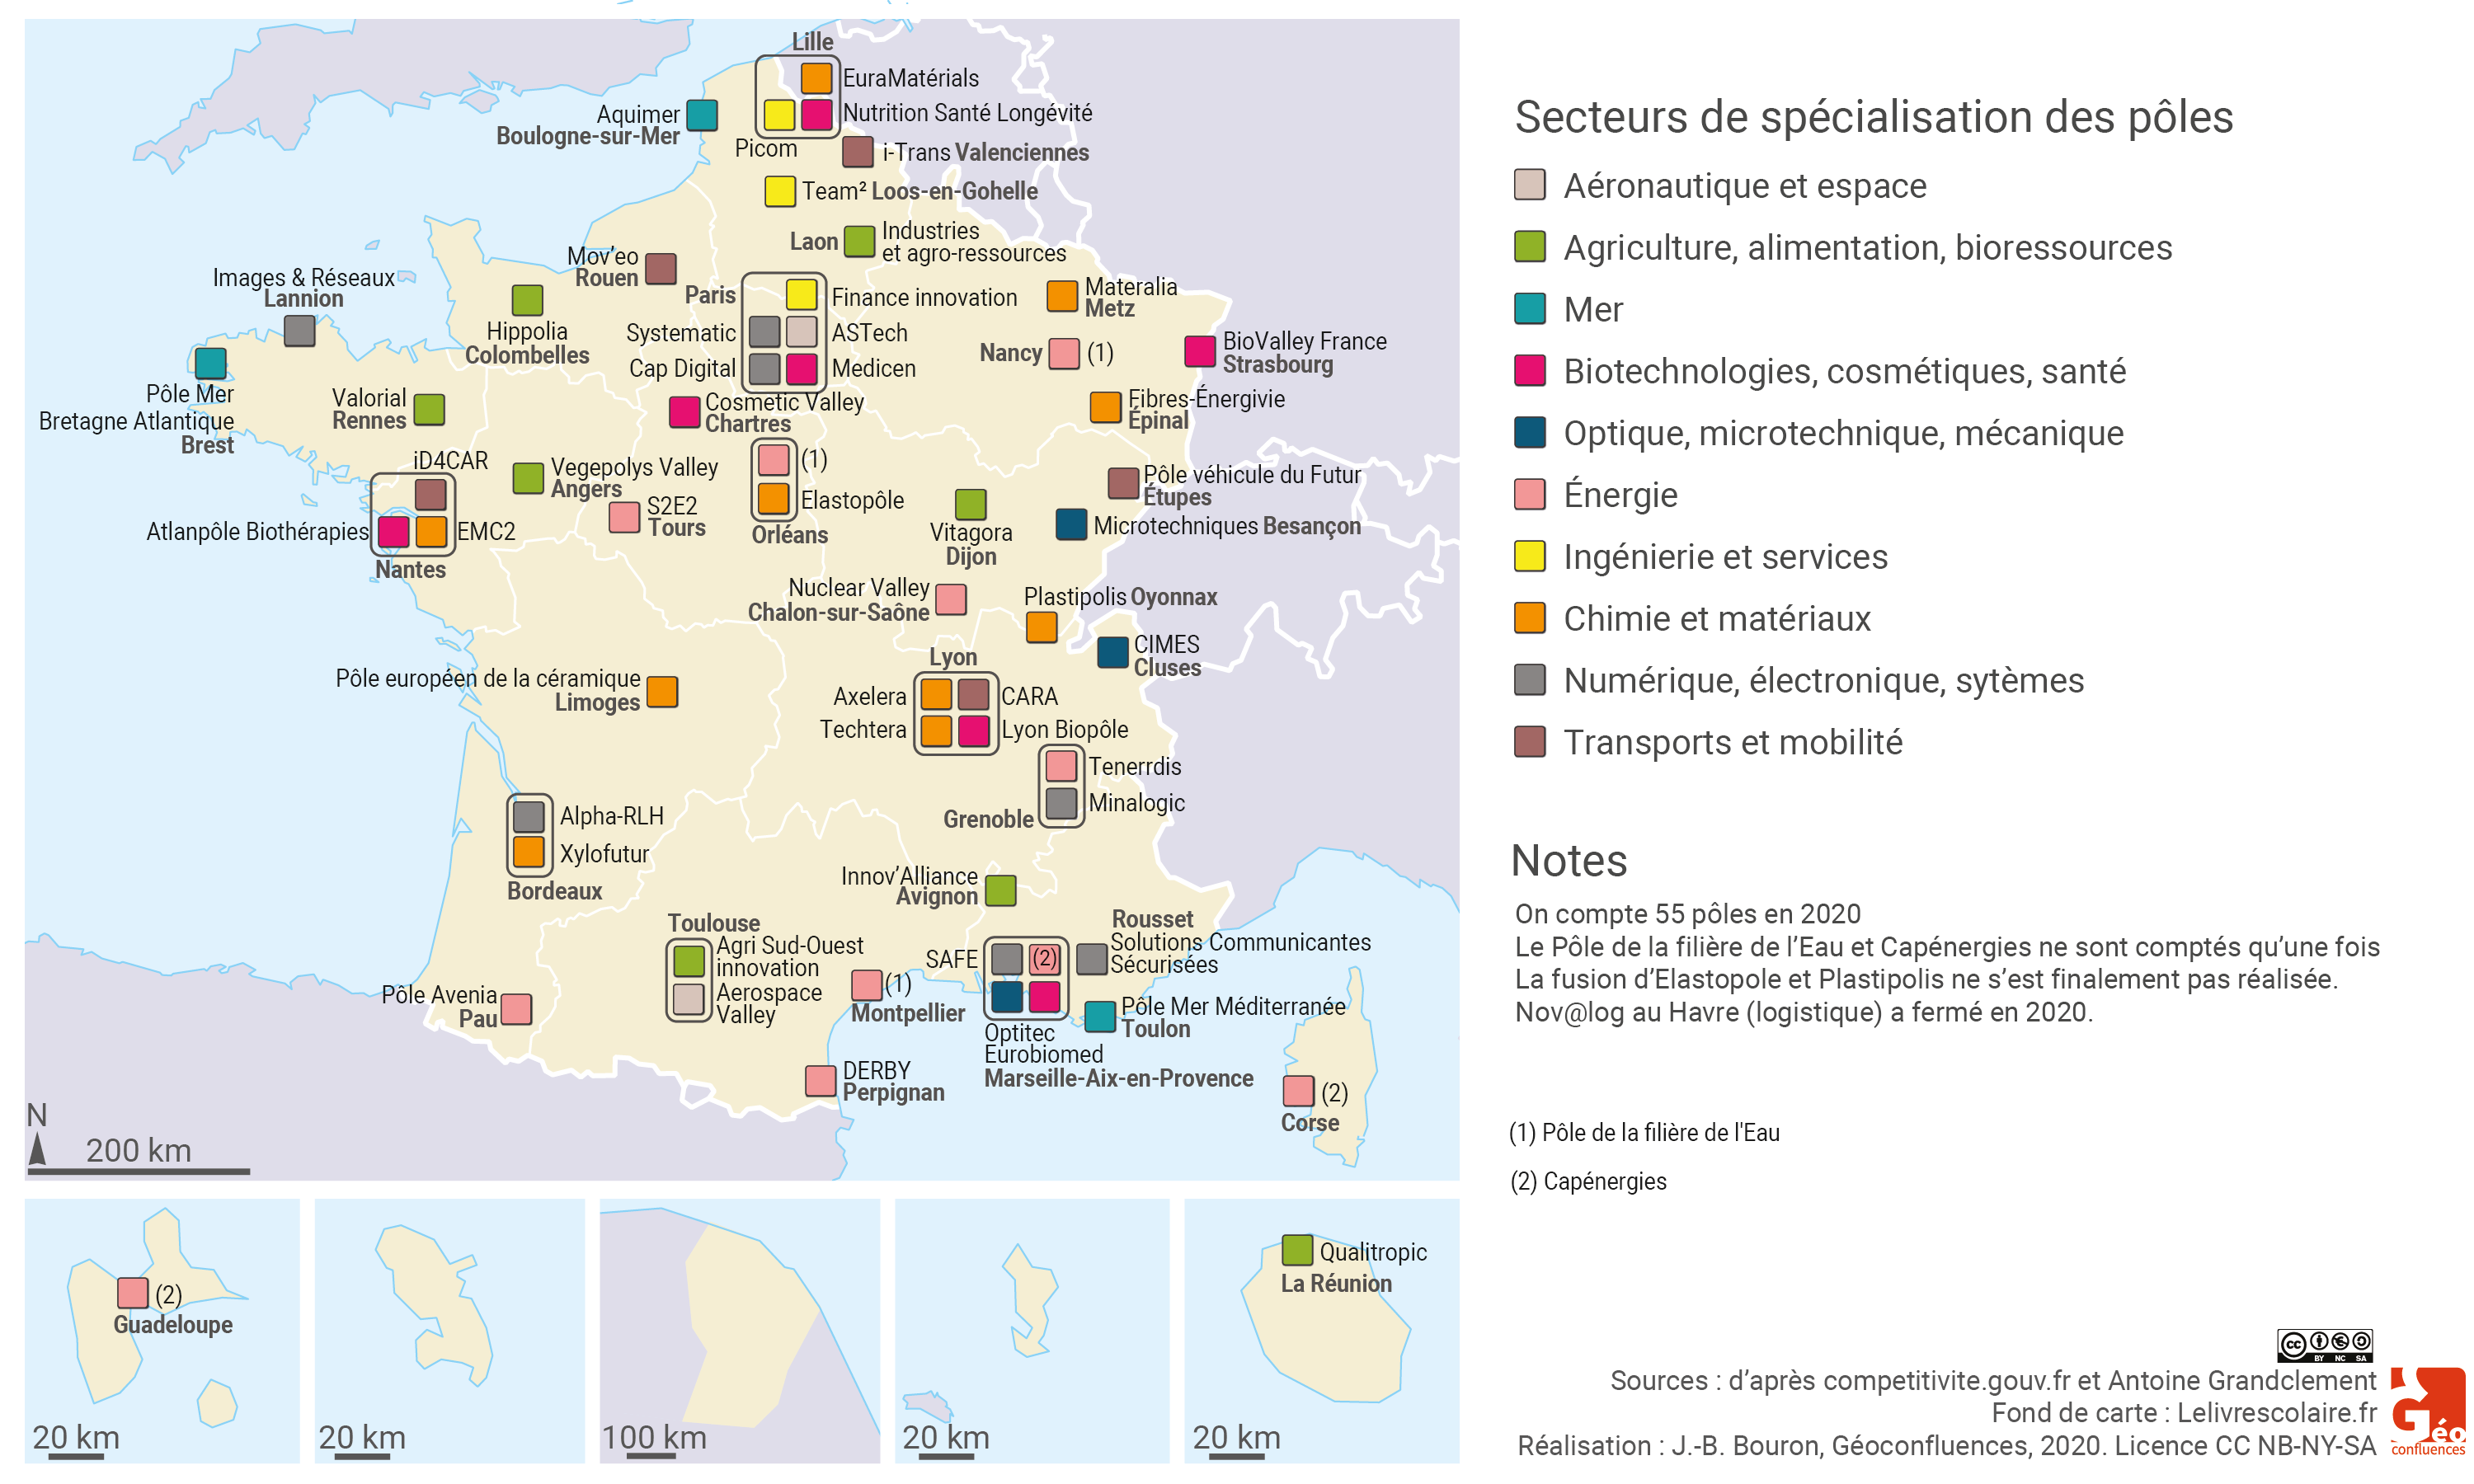 La carte des 55 pôles par secteur d'activité en France en 2020 (haute définition)